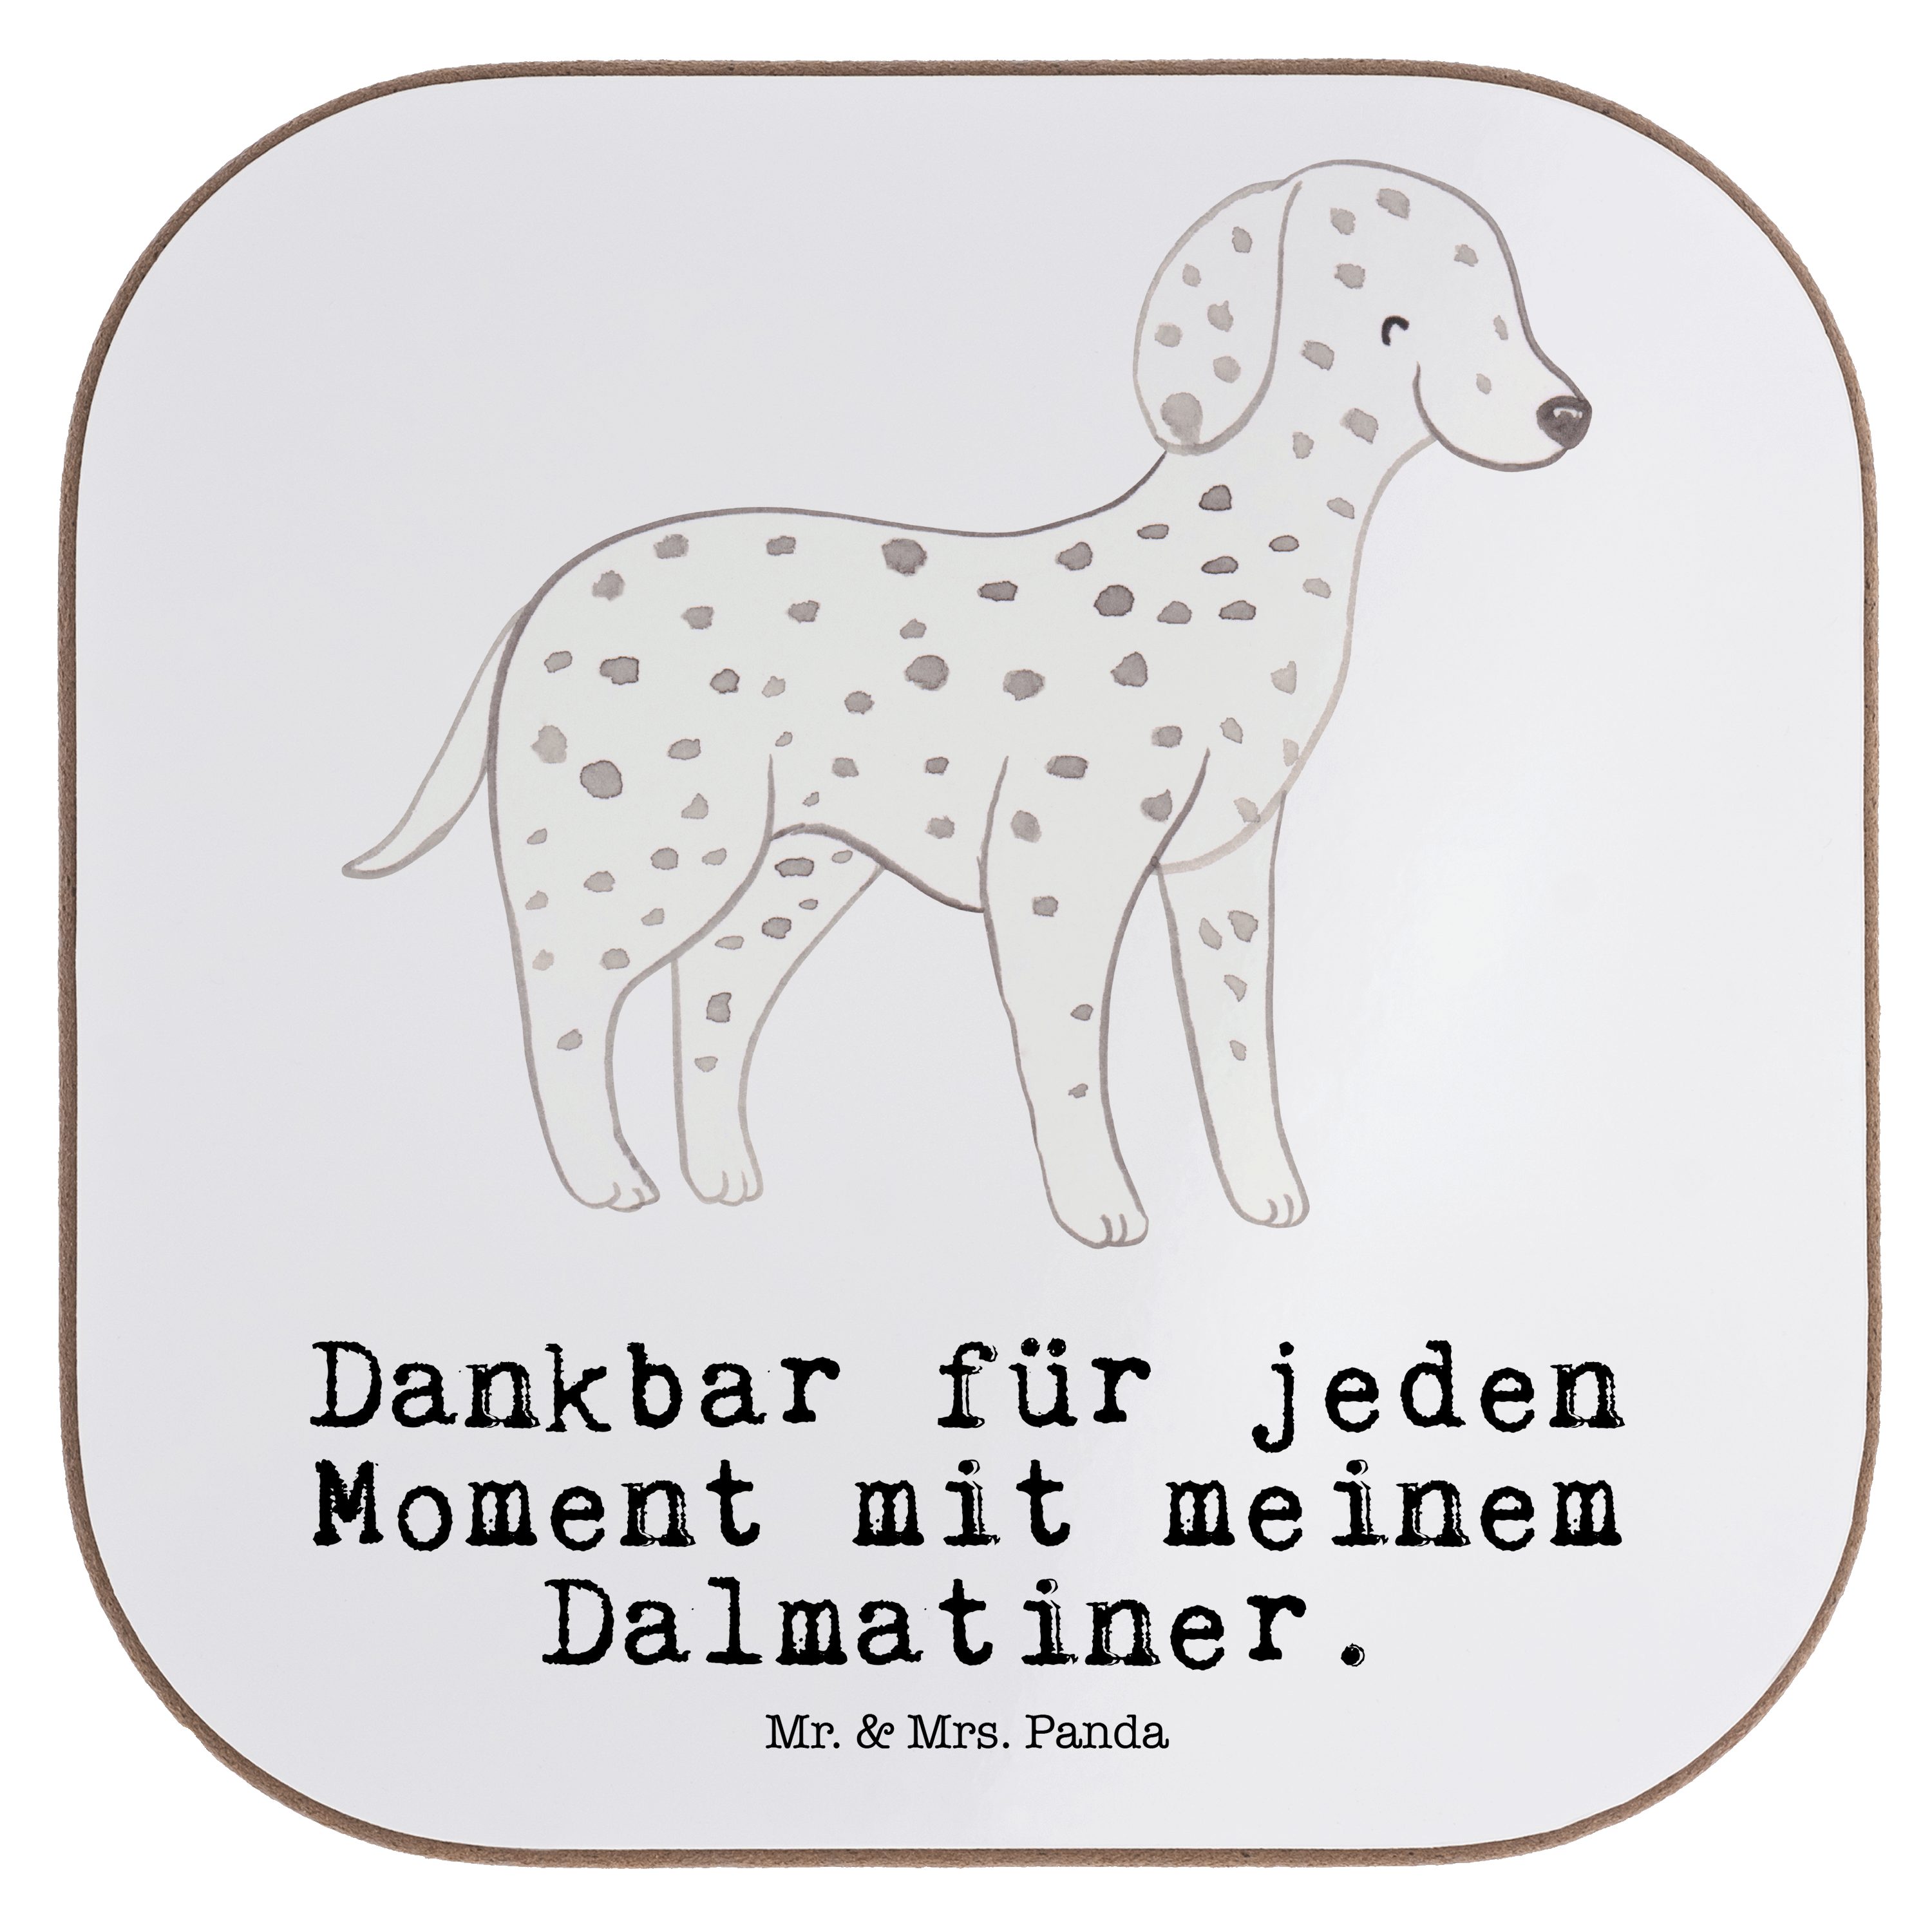 Mr. & Mrs. Panda Getränkeuntersetzer Dalmatiner Moment - Weiß - Geschenk, Hund, Schenken, Getränkeunterset, 1-tlg.